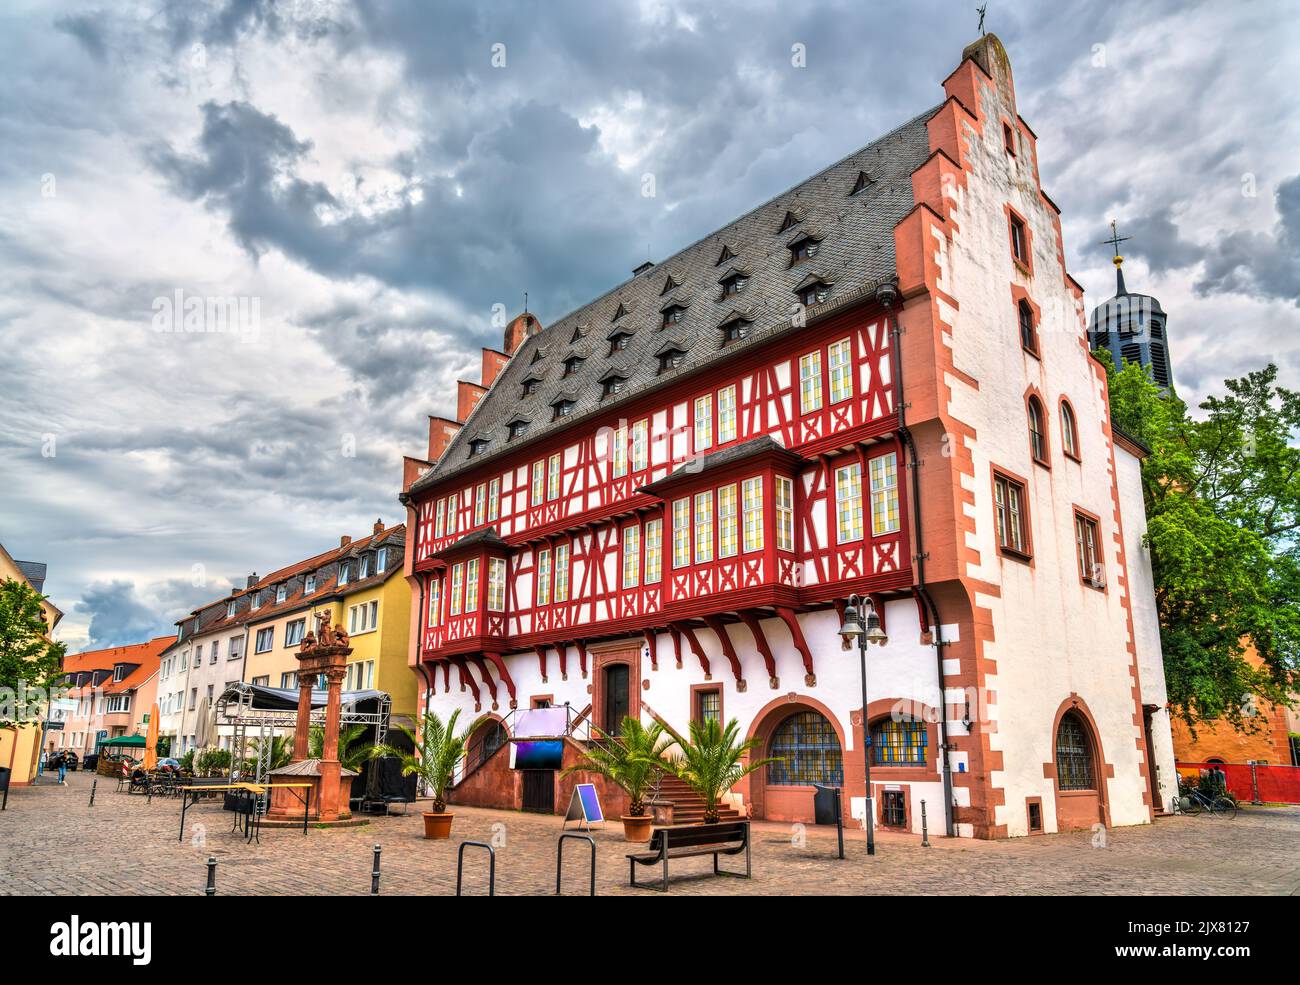 Traditionelle Architektur von Hanau in Hessen, Deutschland Stockfoto